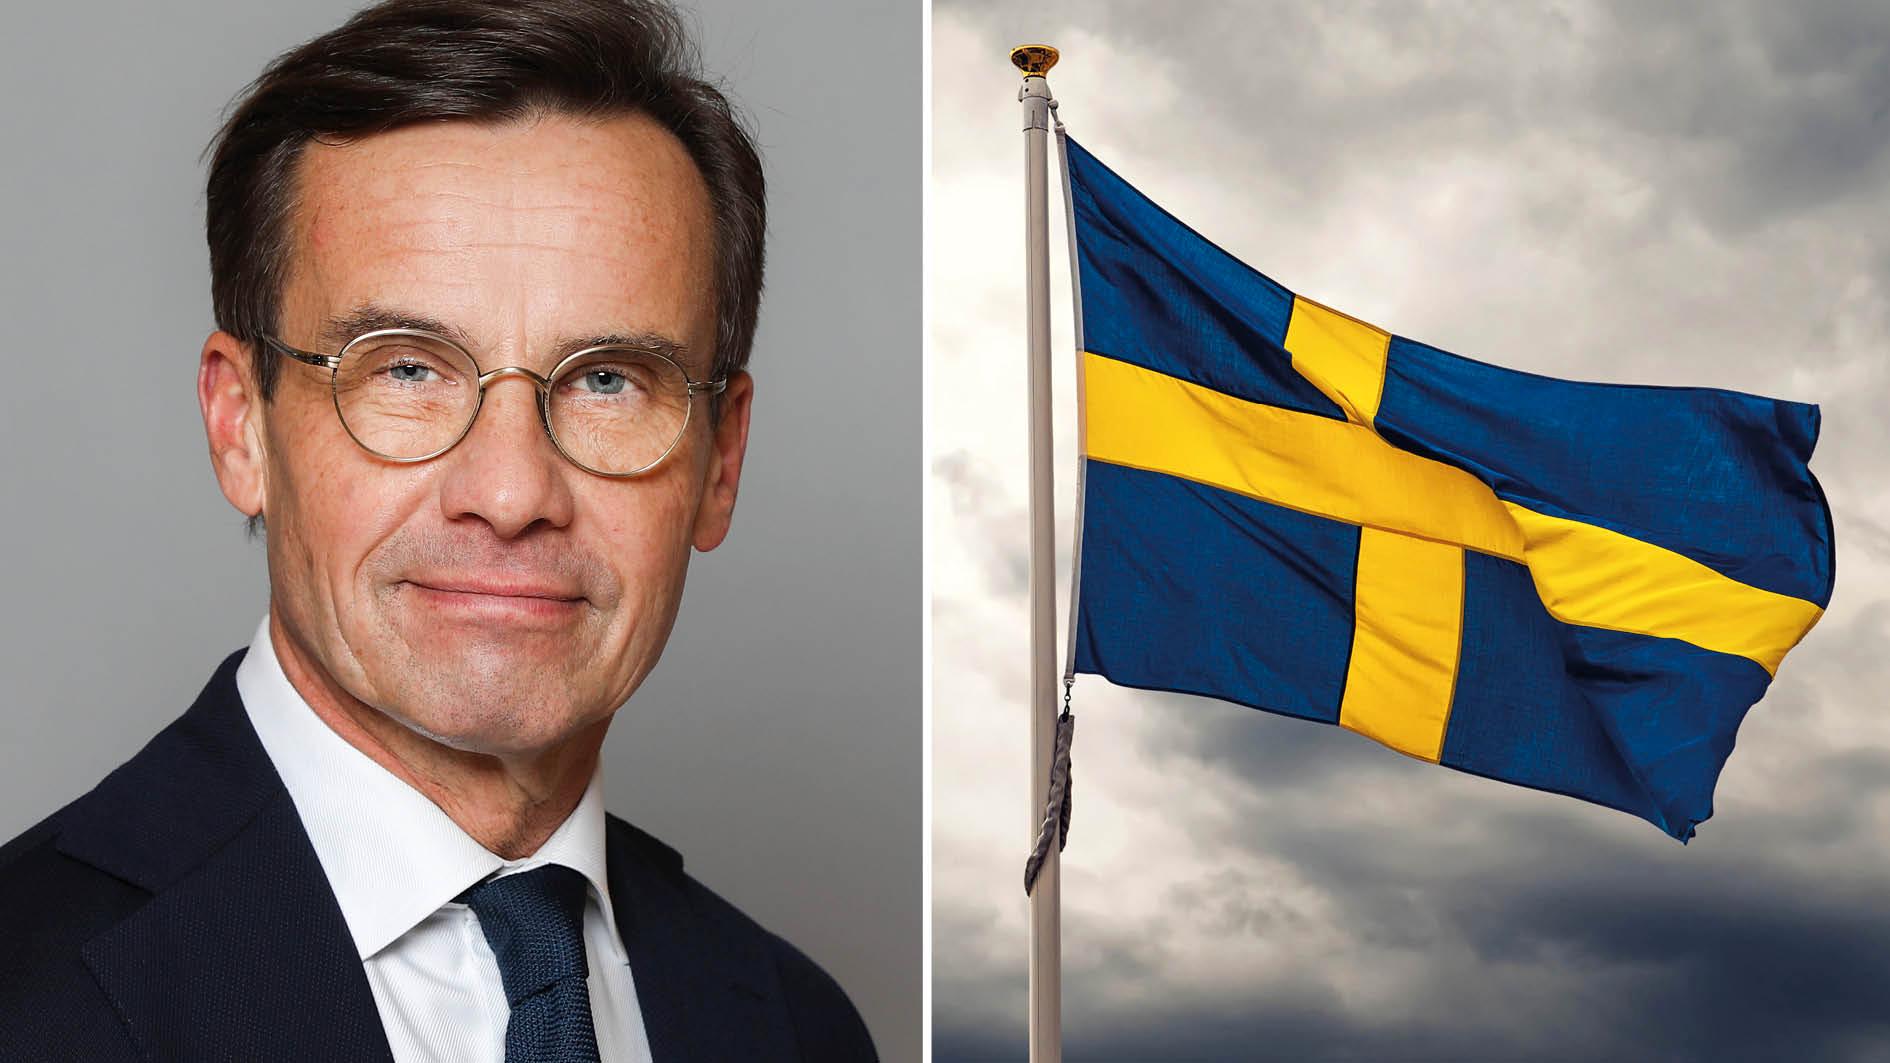 Sverige har stora problem som har vuxit fram under alldeles för lång tid. Förändring är inte bara möjlig, utan dessutom helt nödvändig. Och den har nu påbörjats, skriver statsministern.